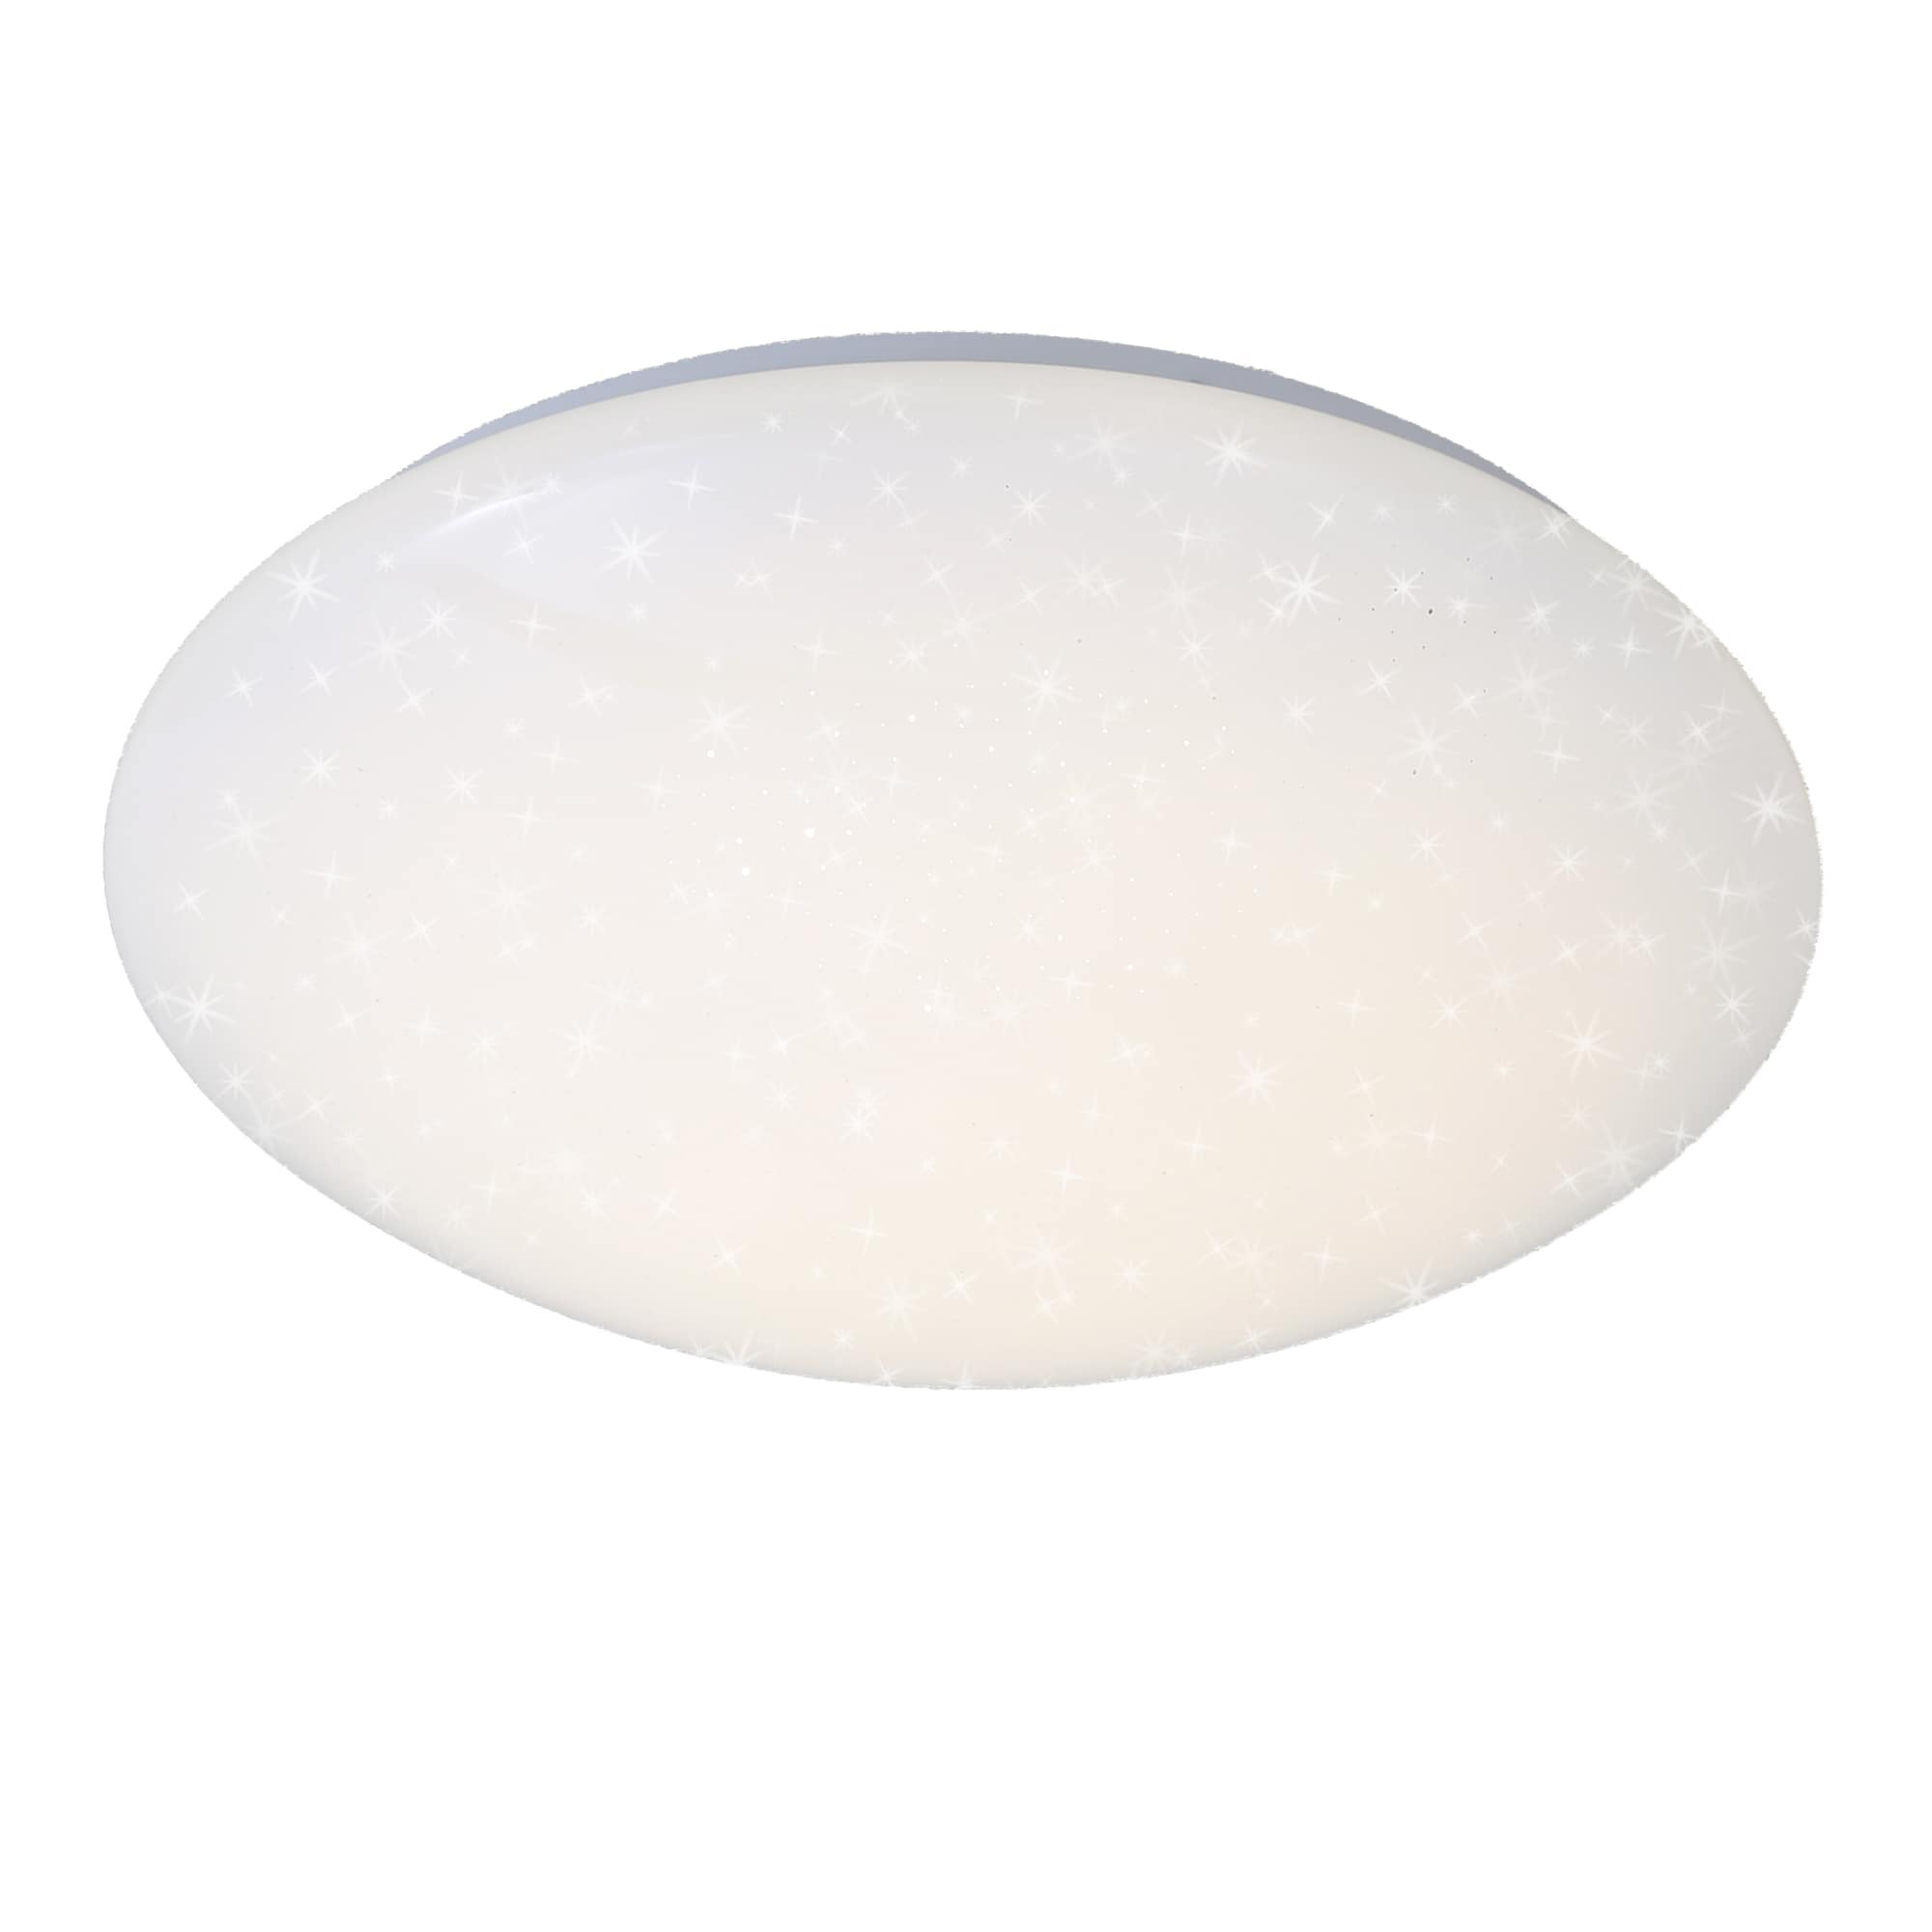 LED Ceiling light Ø 38 cm 18W 2200lm white